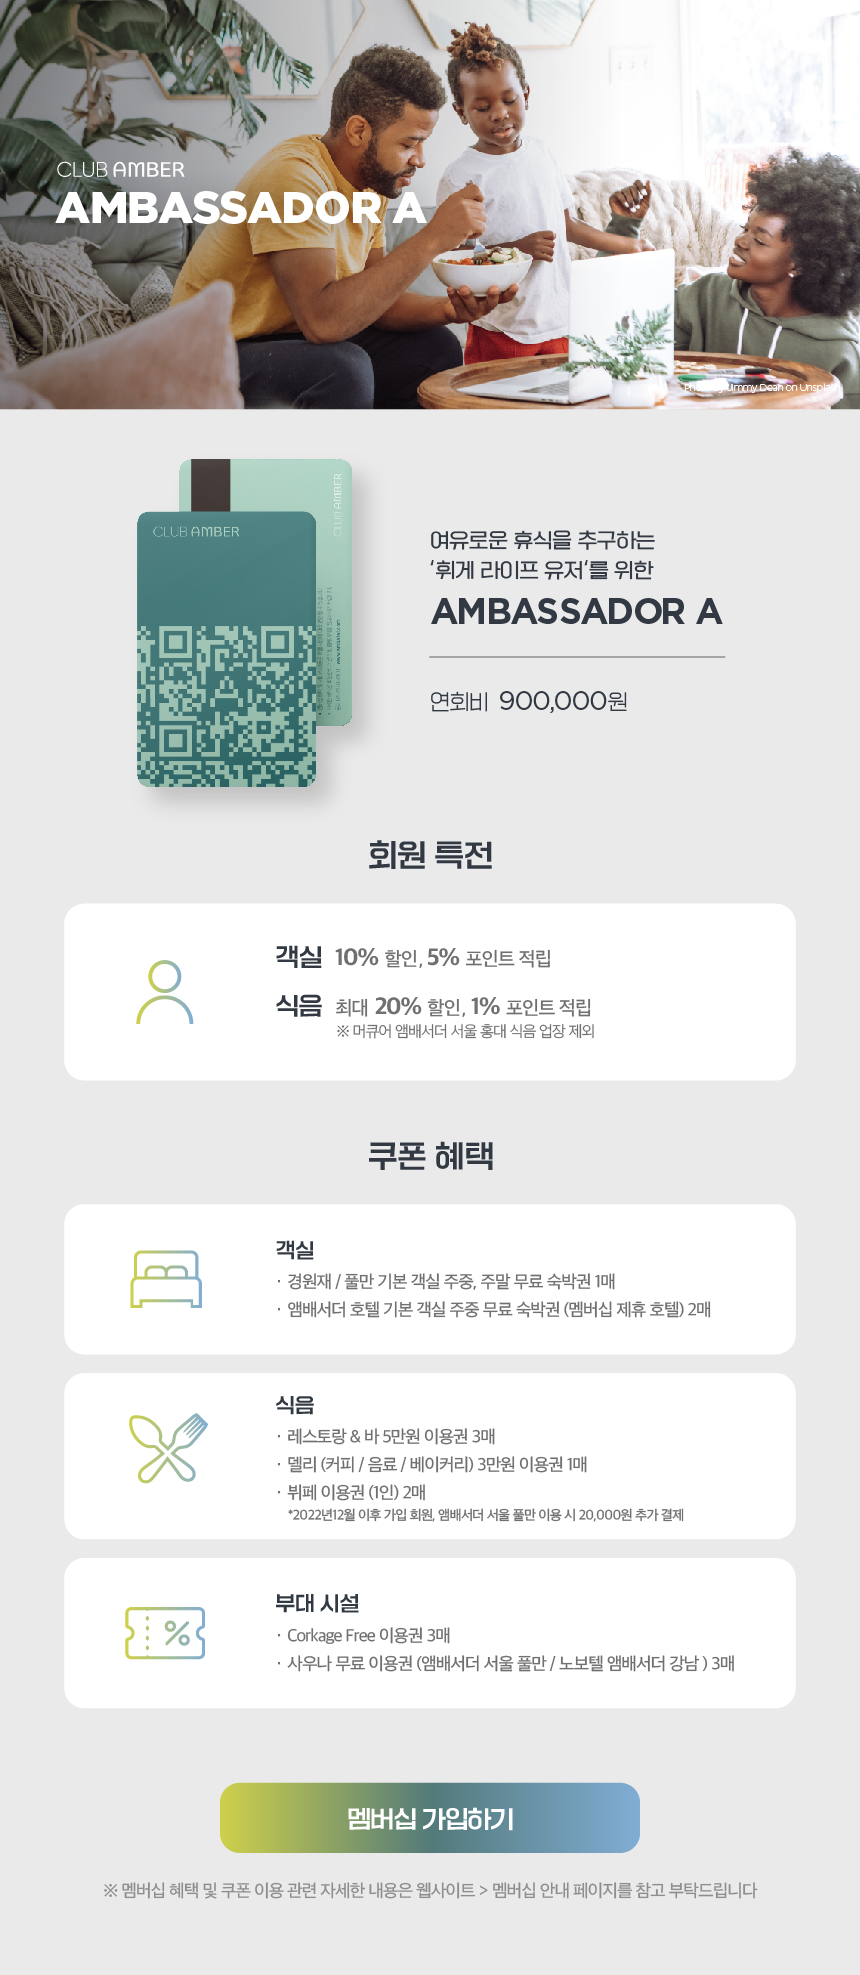 Ambassador A